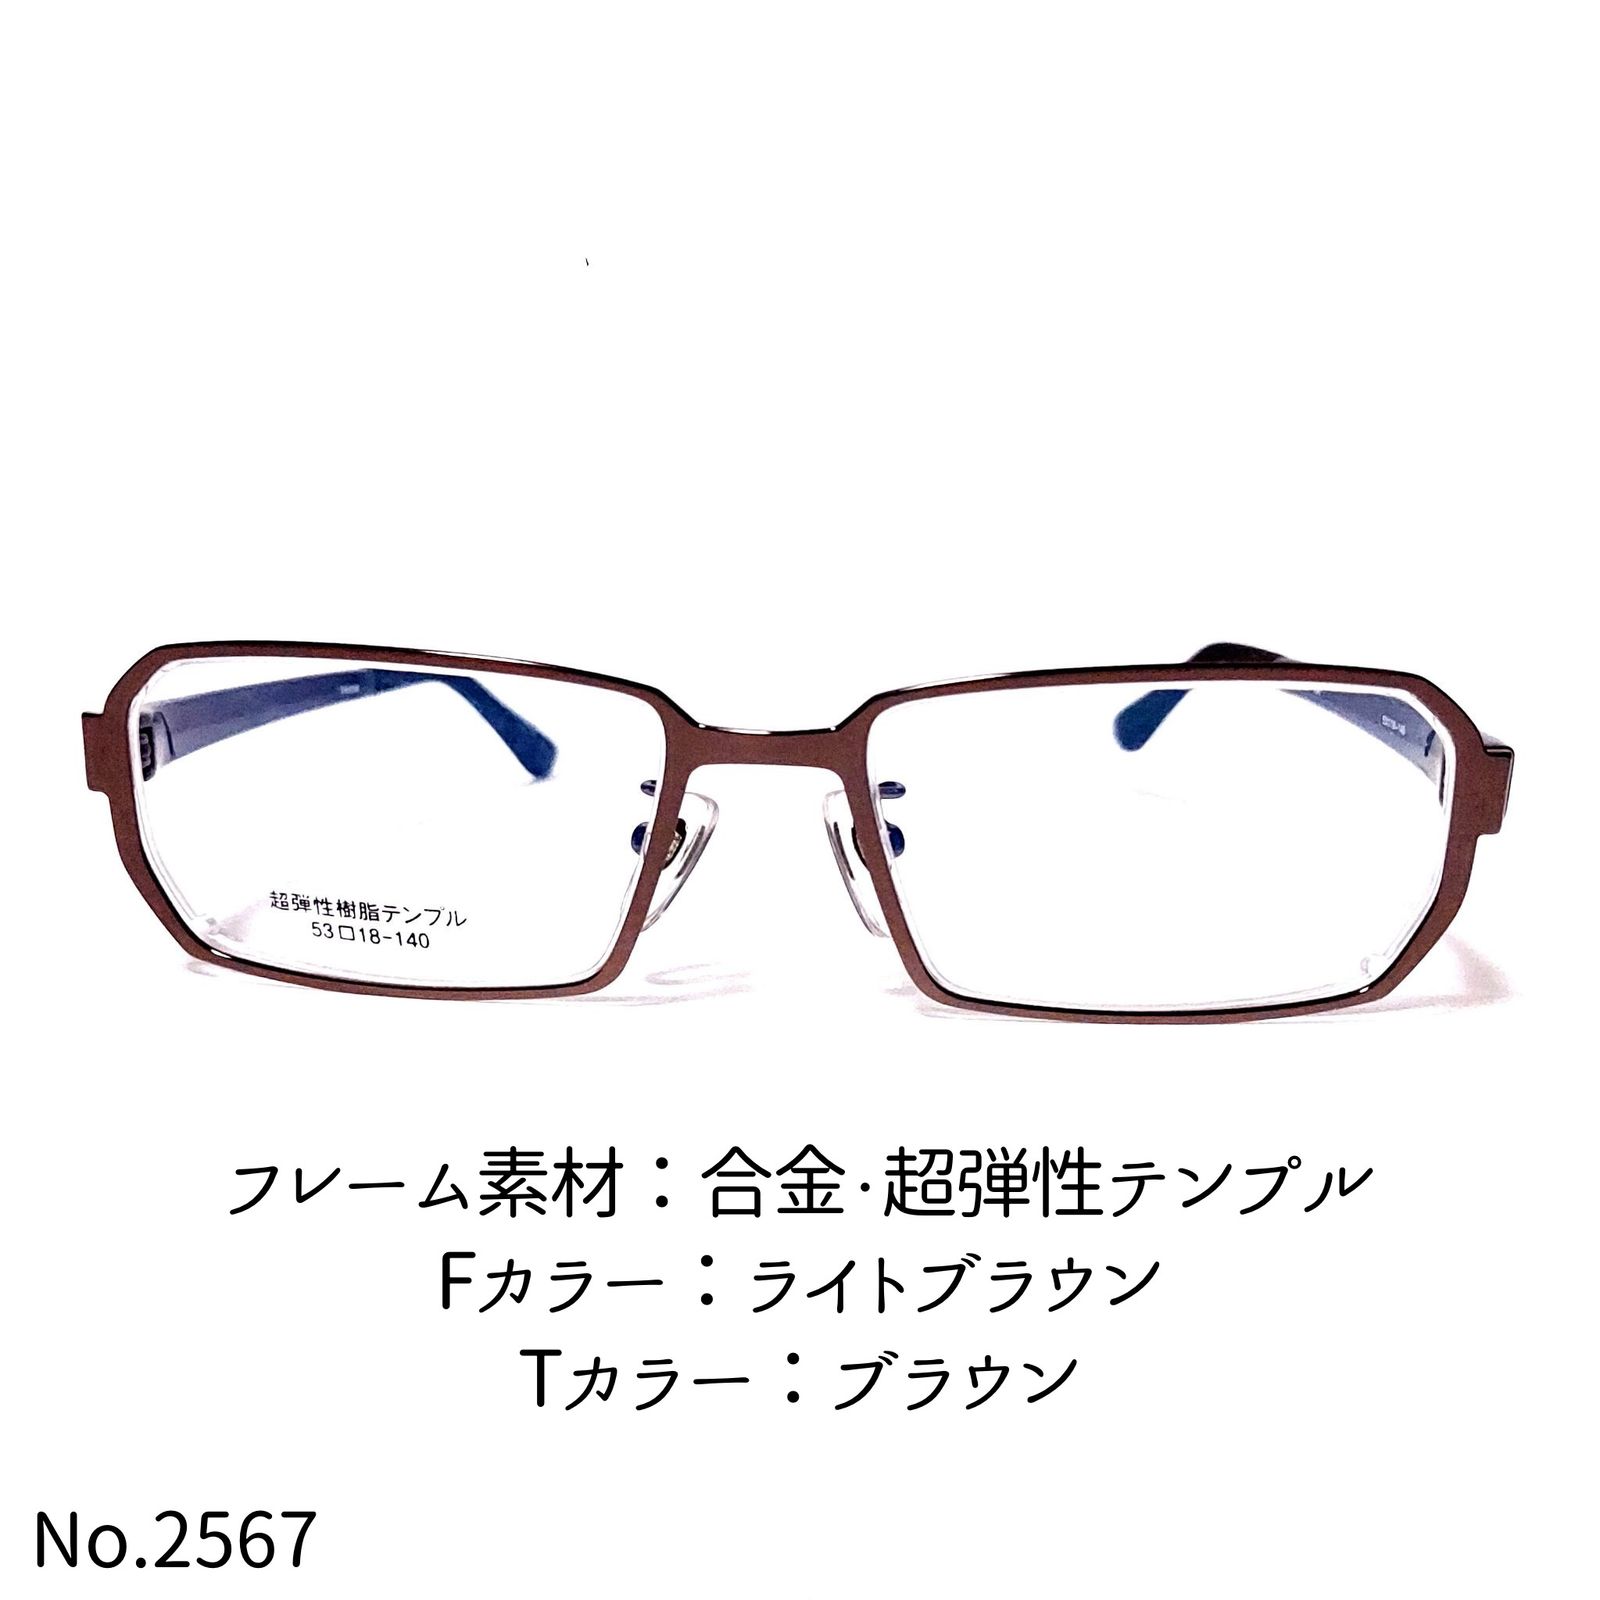 No.2567-メガネ TR03M ライトブラウン【フレームのみ価格】 - メルカリ